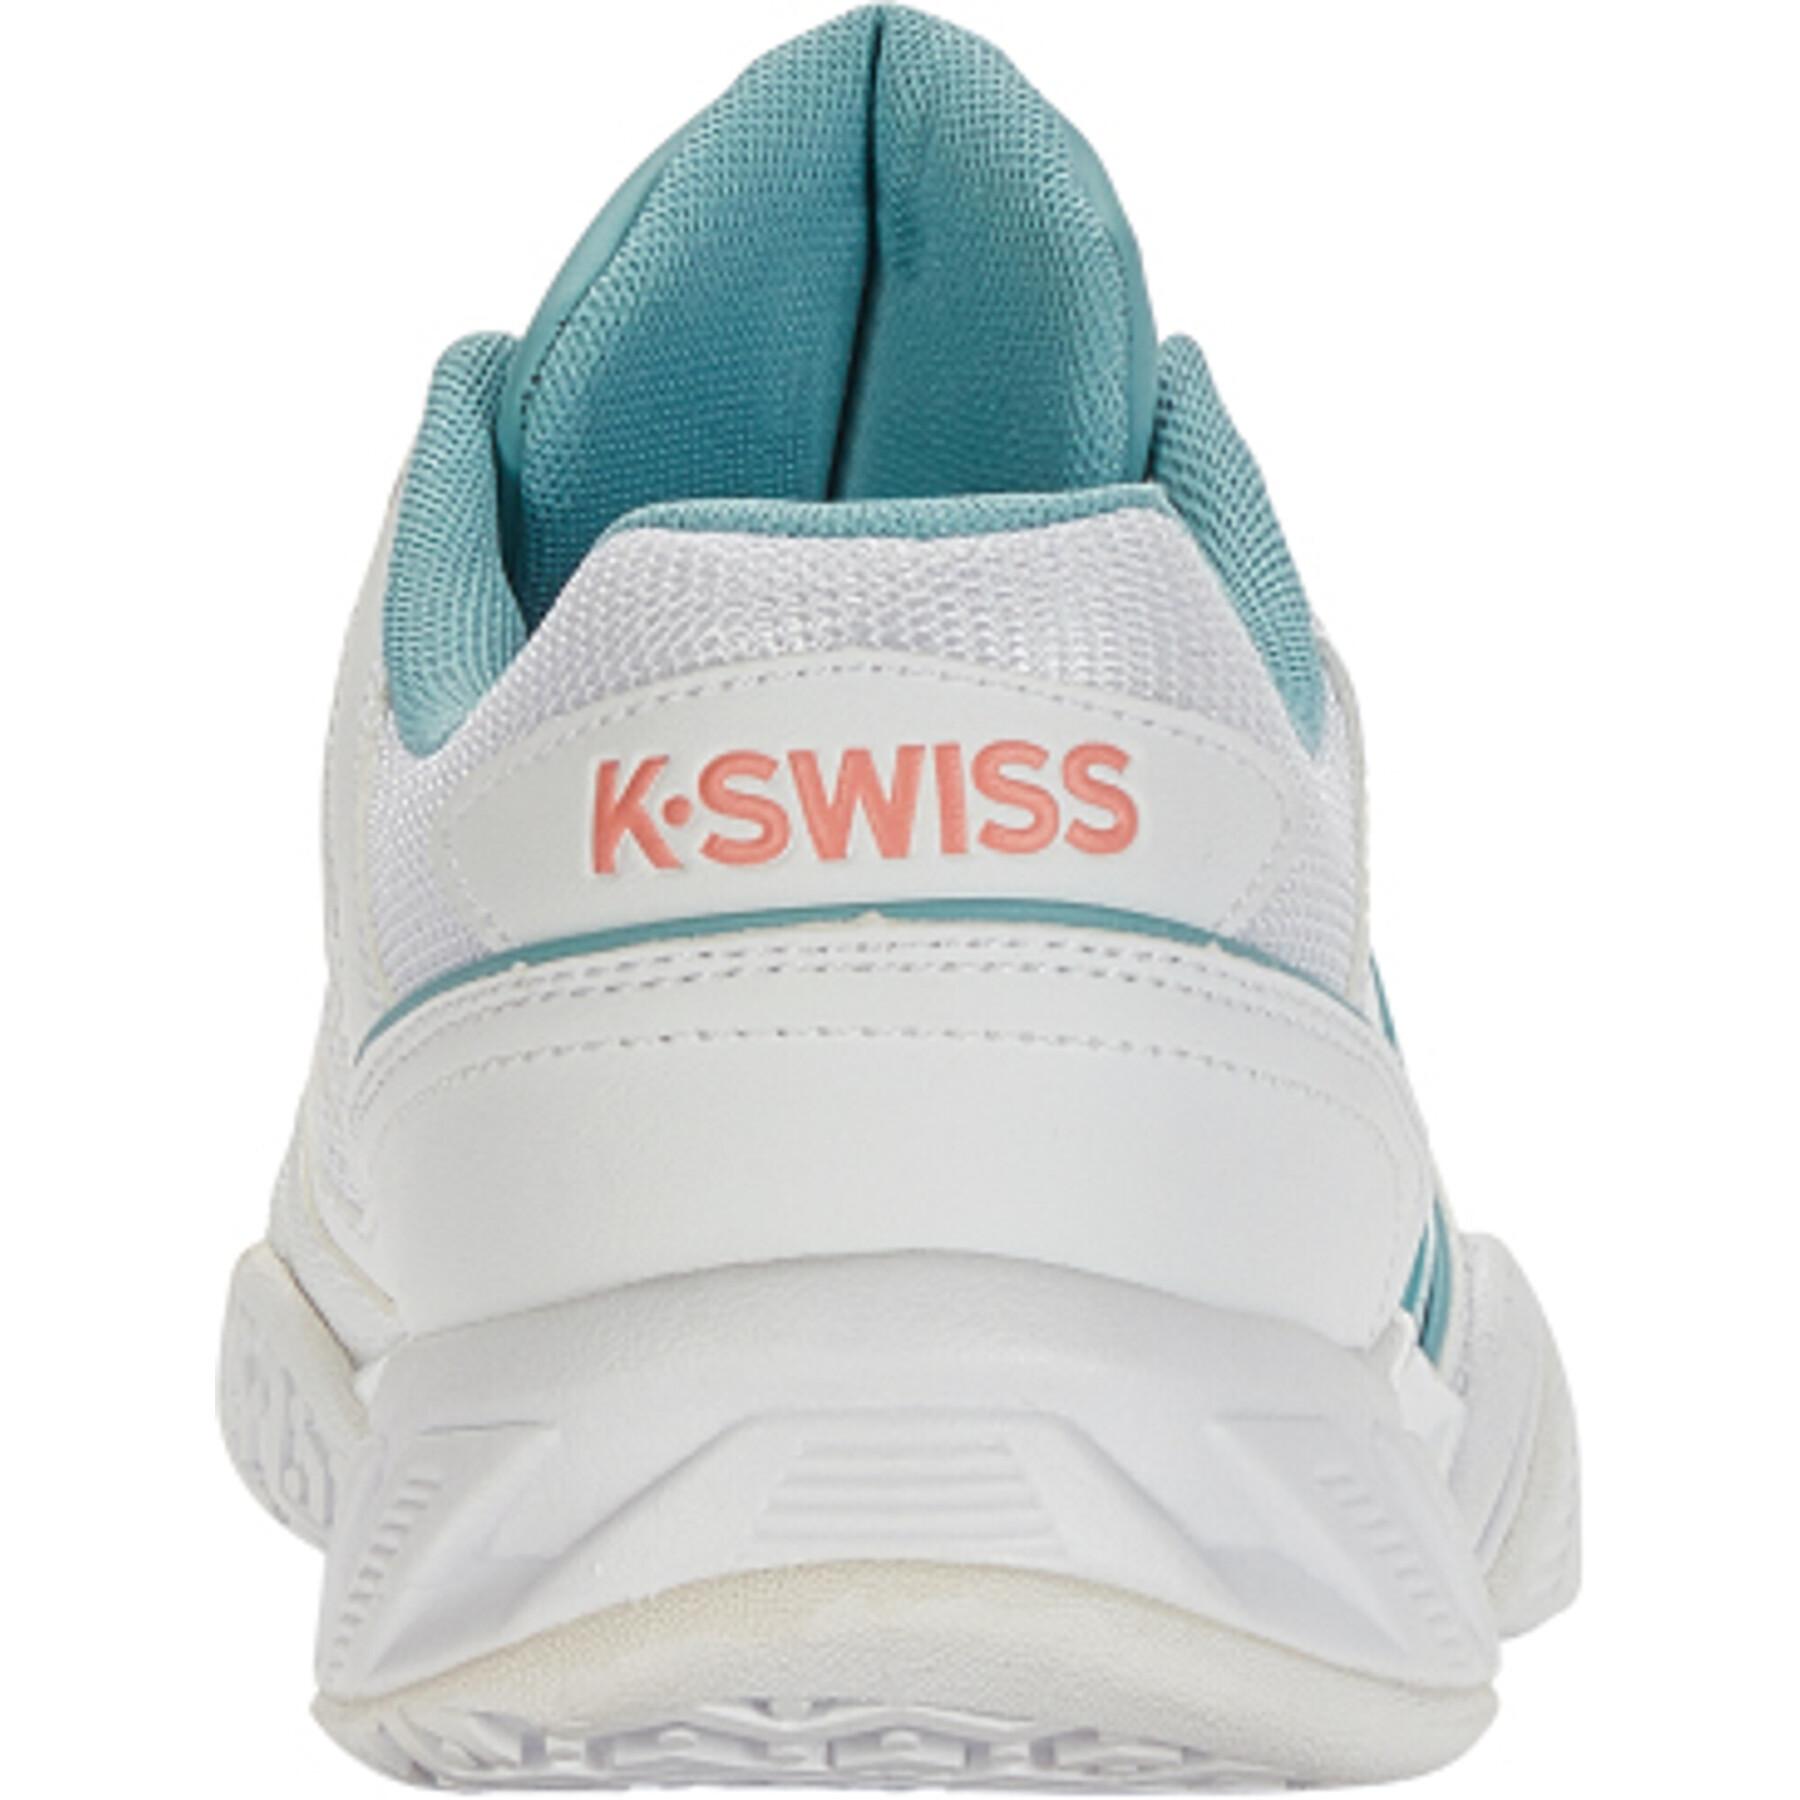 Chaussures de tennis femme K-Swiss Bigshot Light 4 Omni